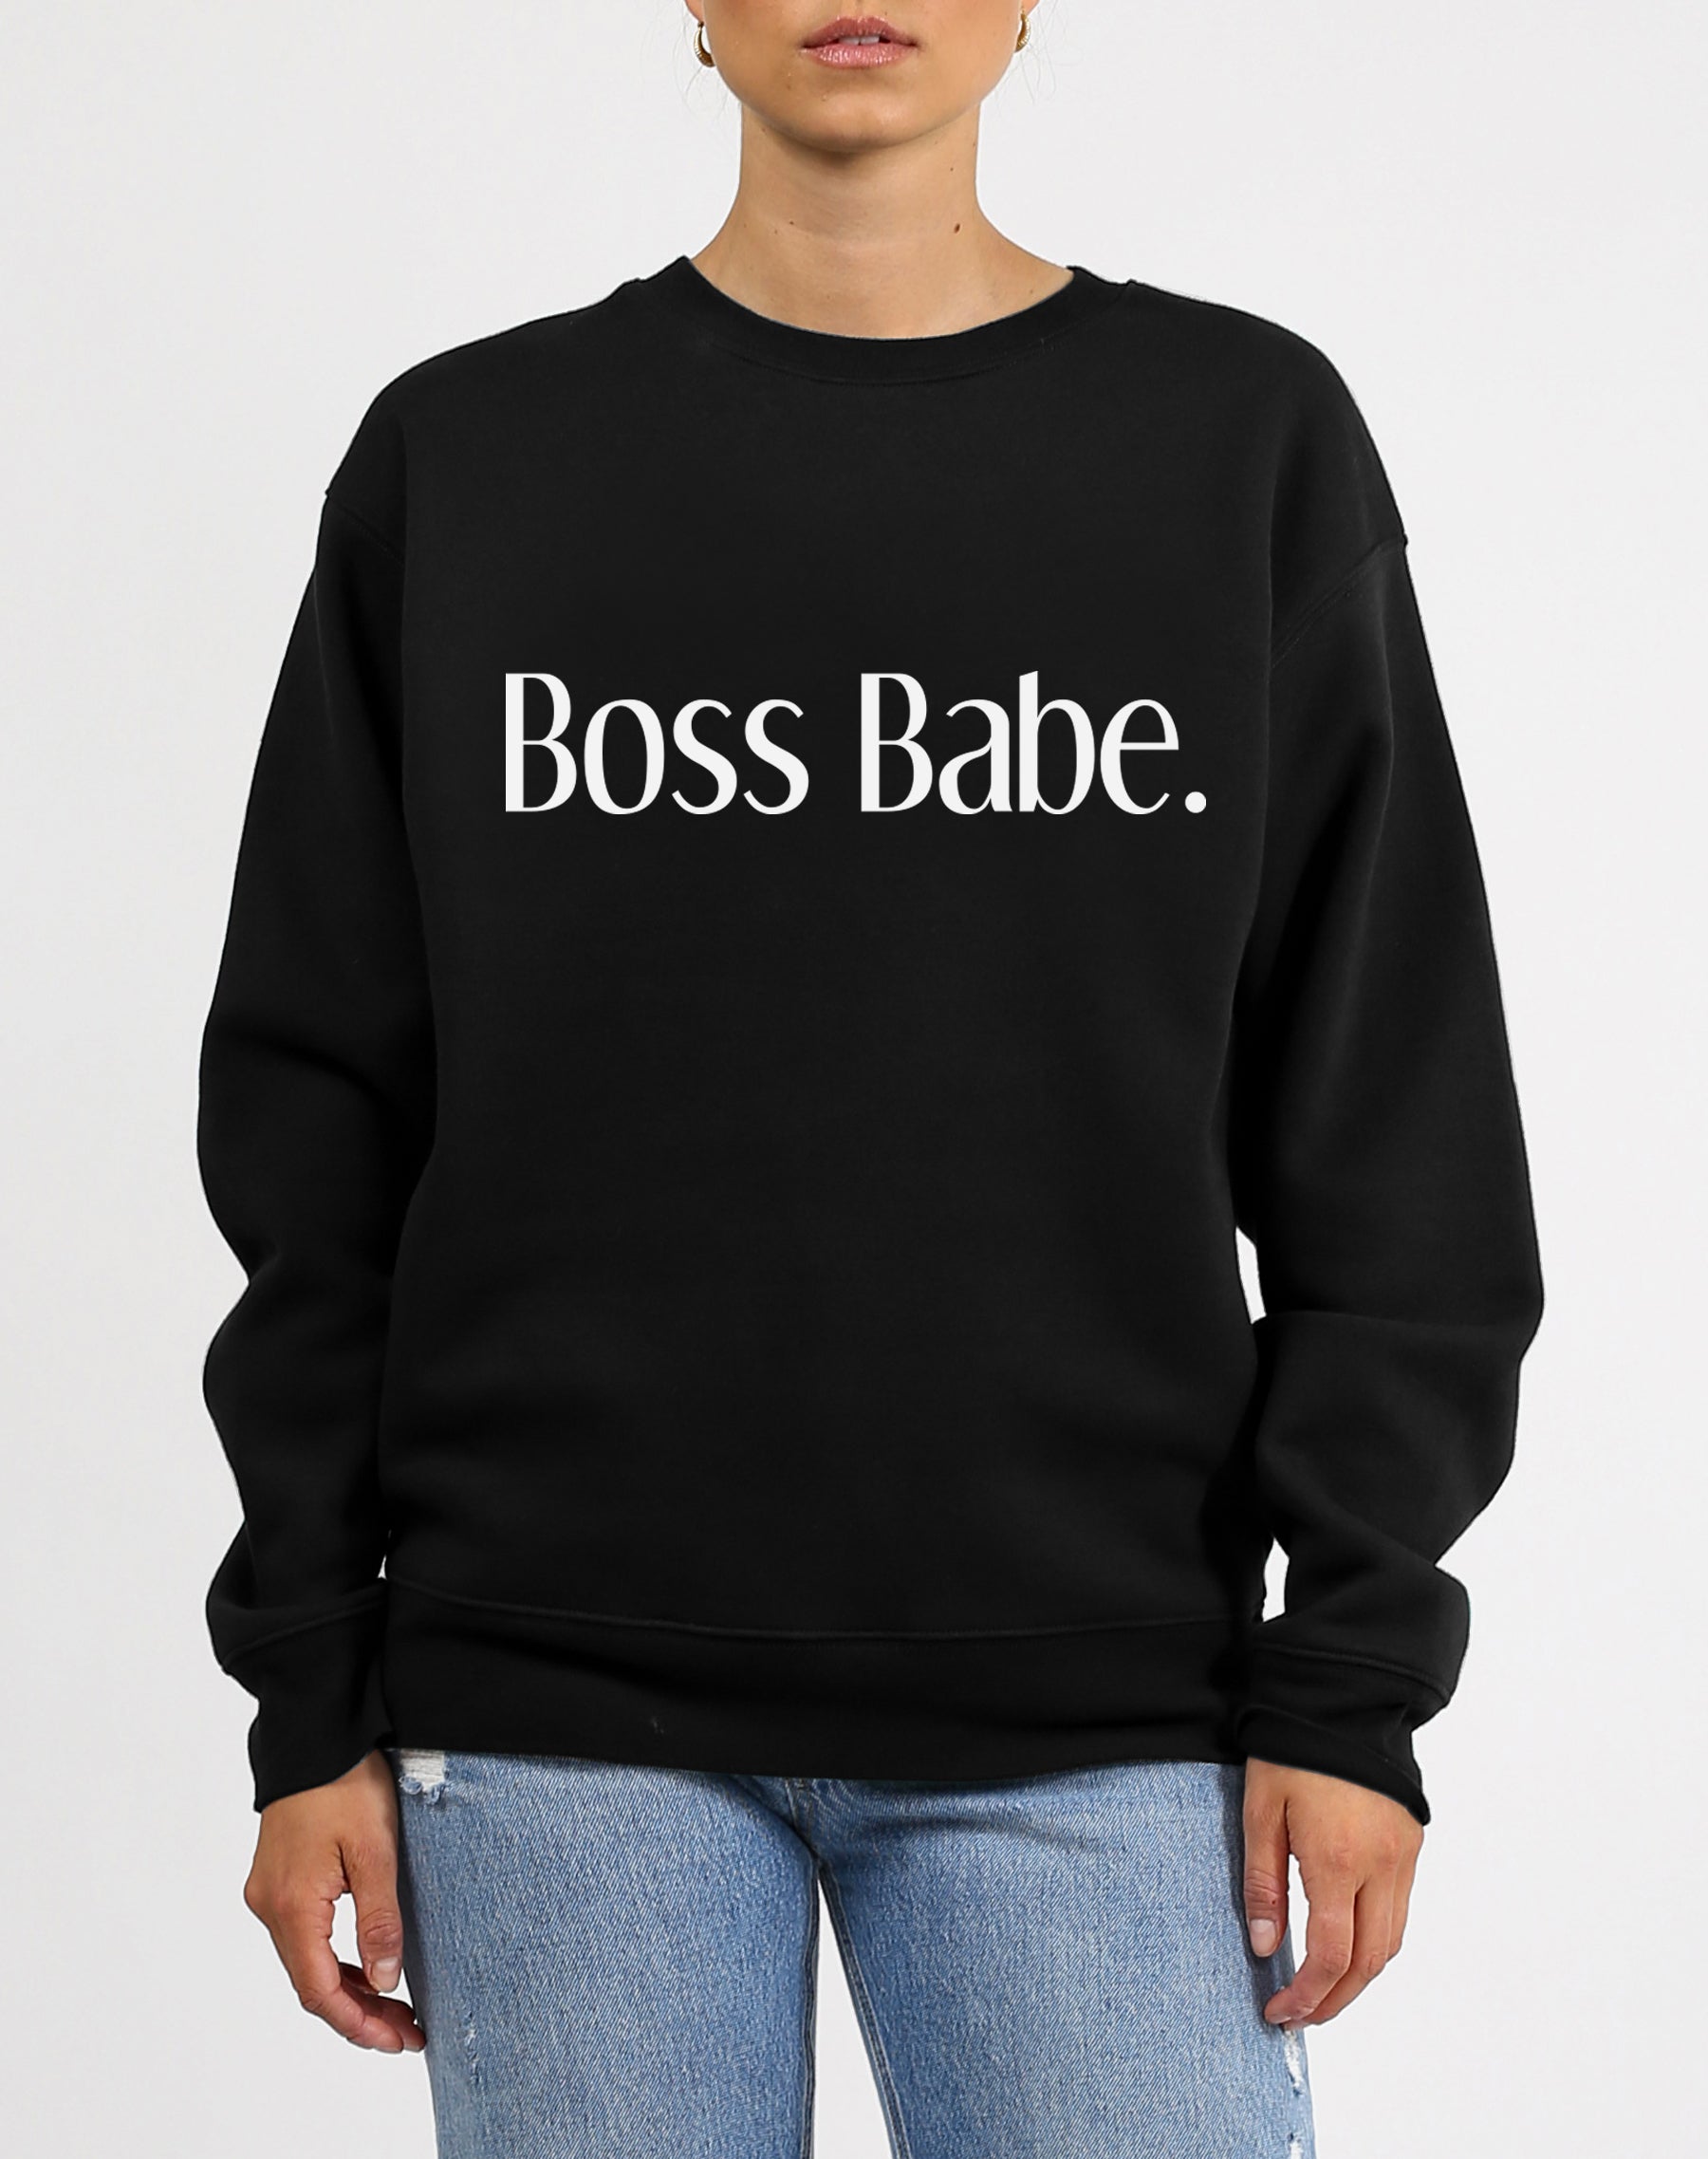 boss babe shirts